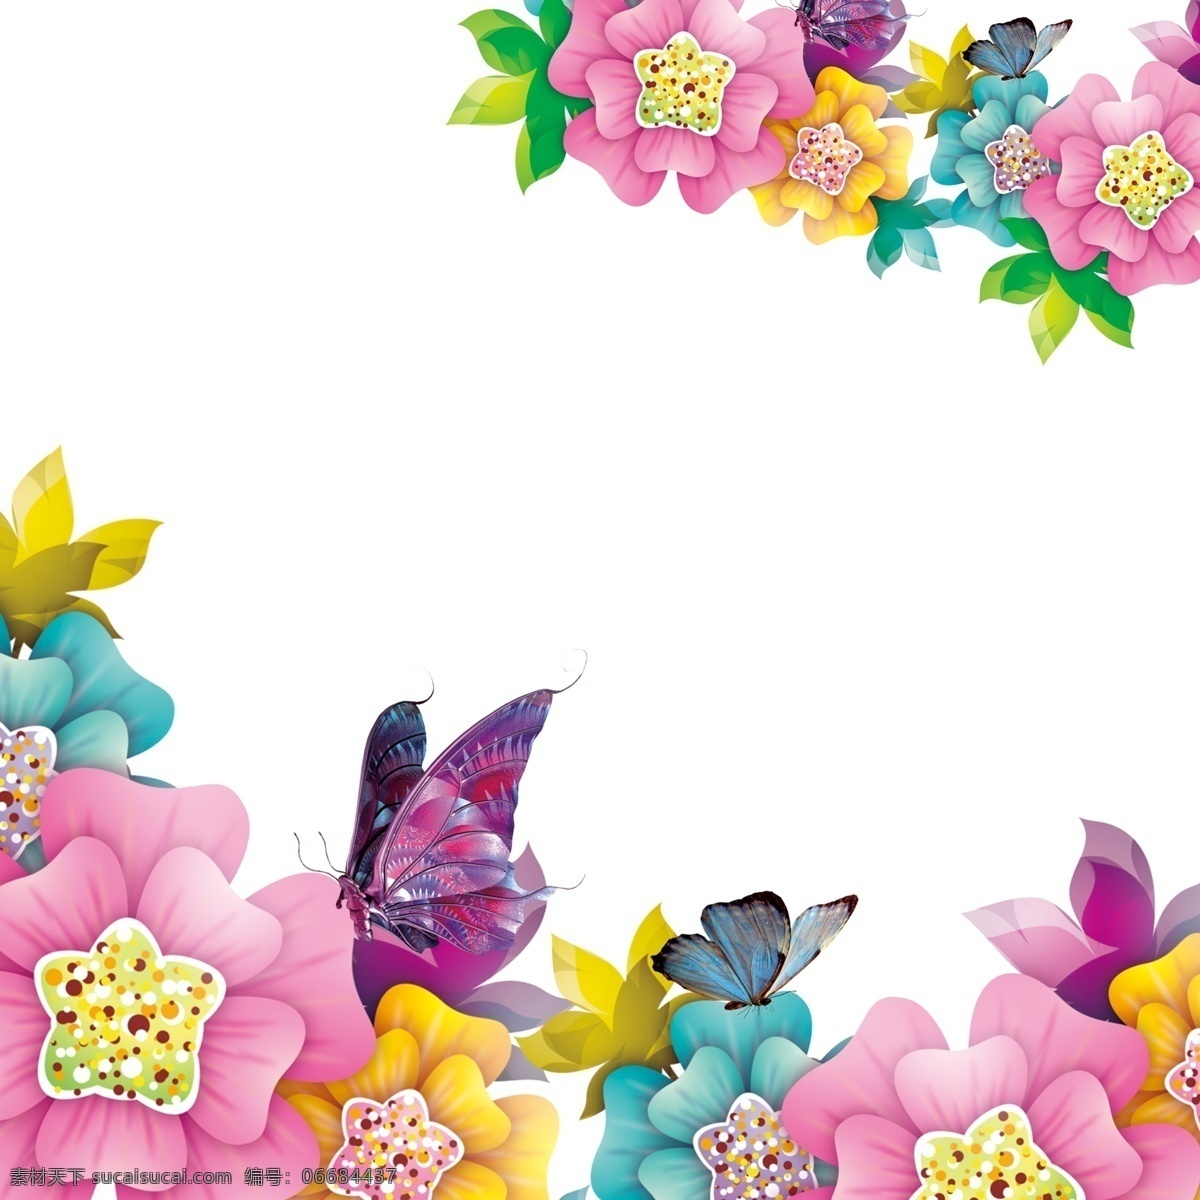 花朵 彩色 花蕊 蝴蝶 彩蝶 树叶 广告 背景 彩色花朵 广告背景 广告素材 淘宝广告元素